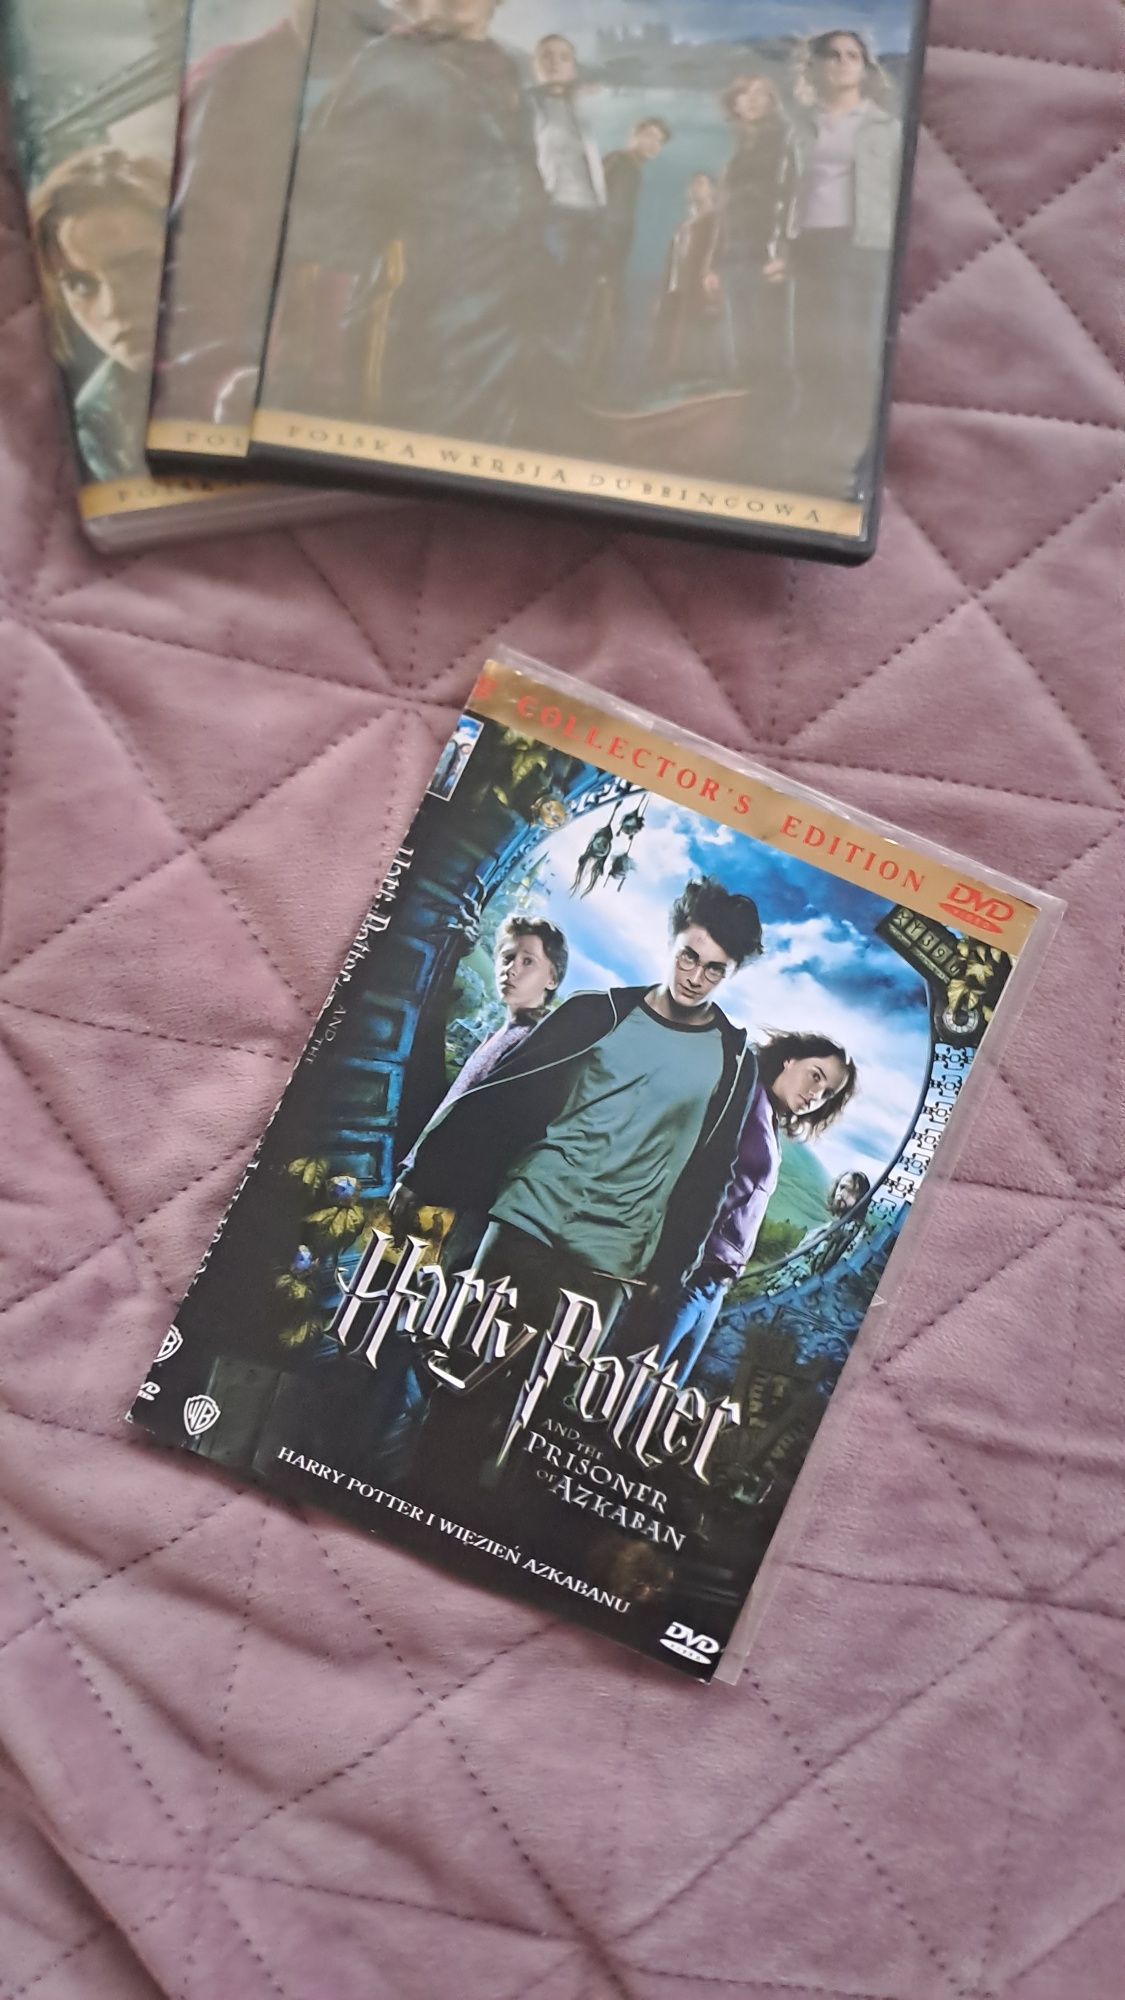 Płyty DVD Harry Potter 4 sztuki